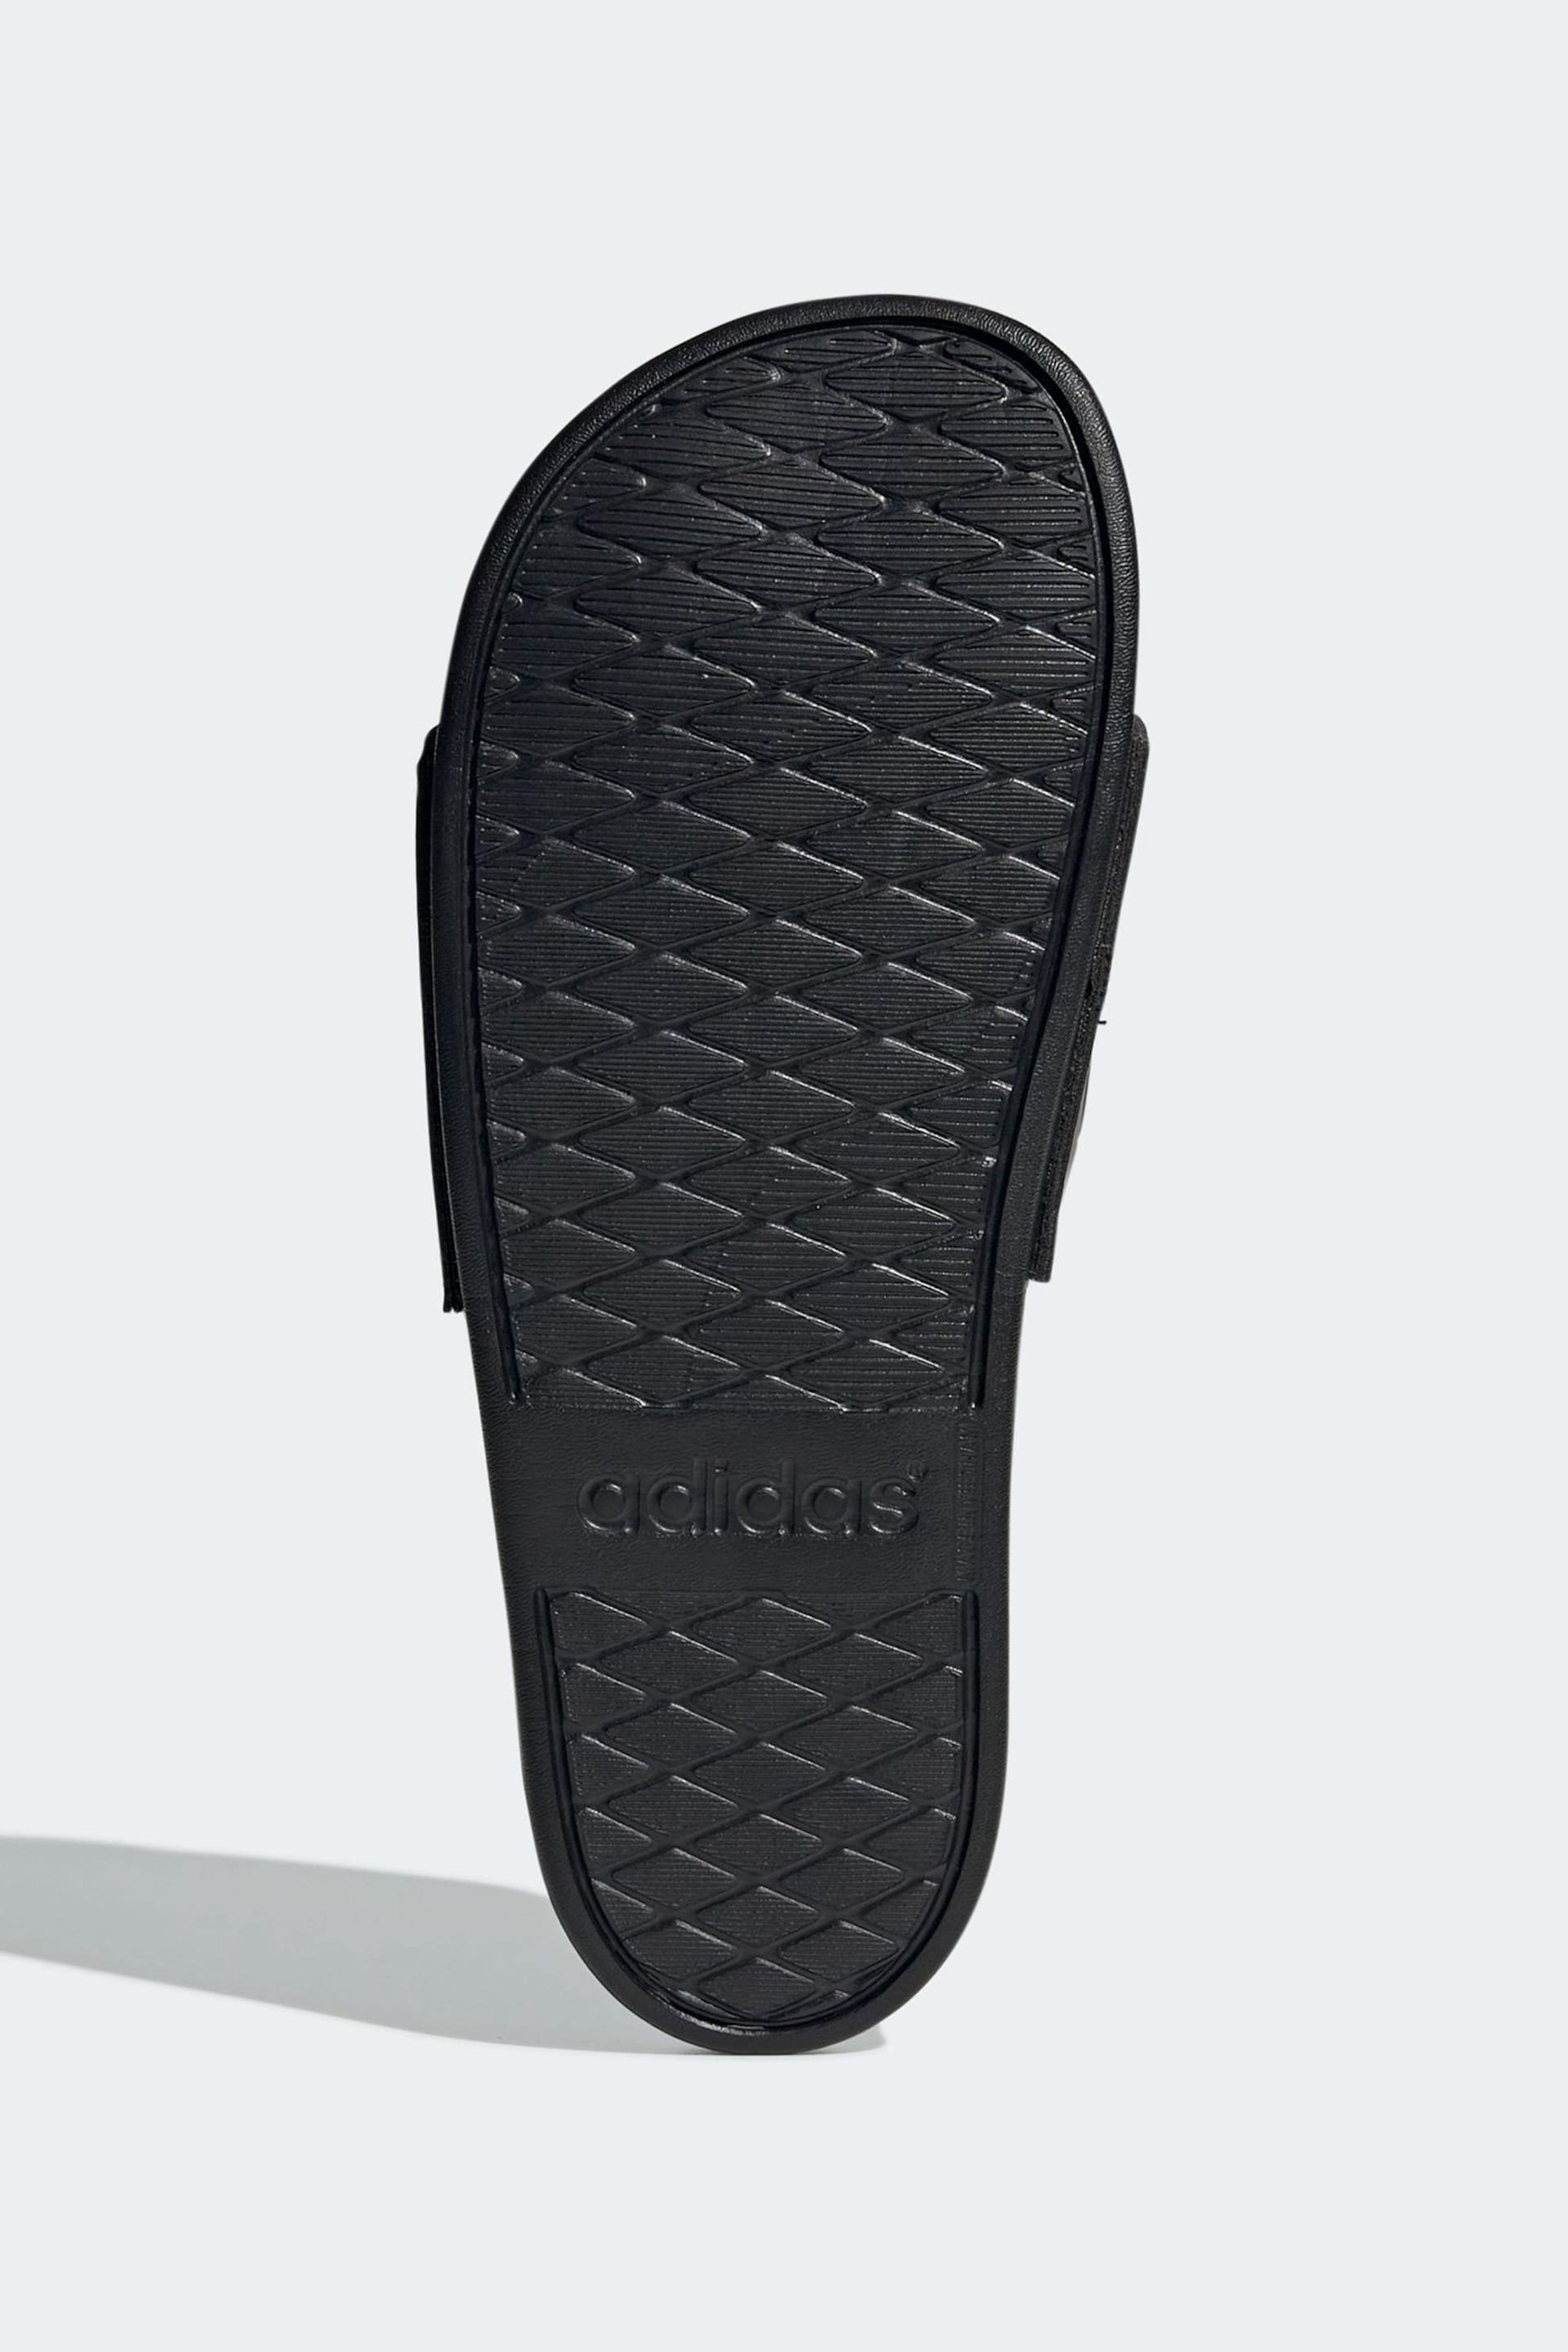 adidas Black Adilette Comfort Slides - Image 6 of 9